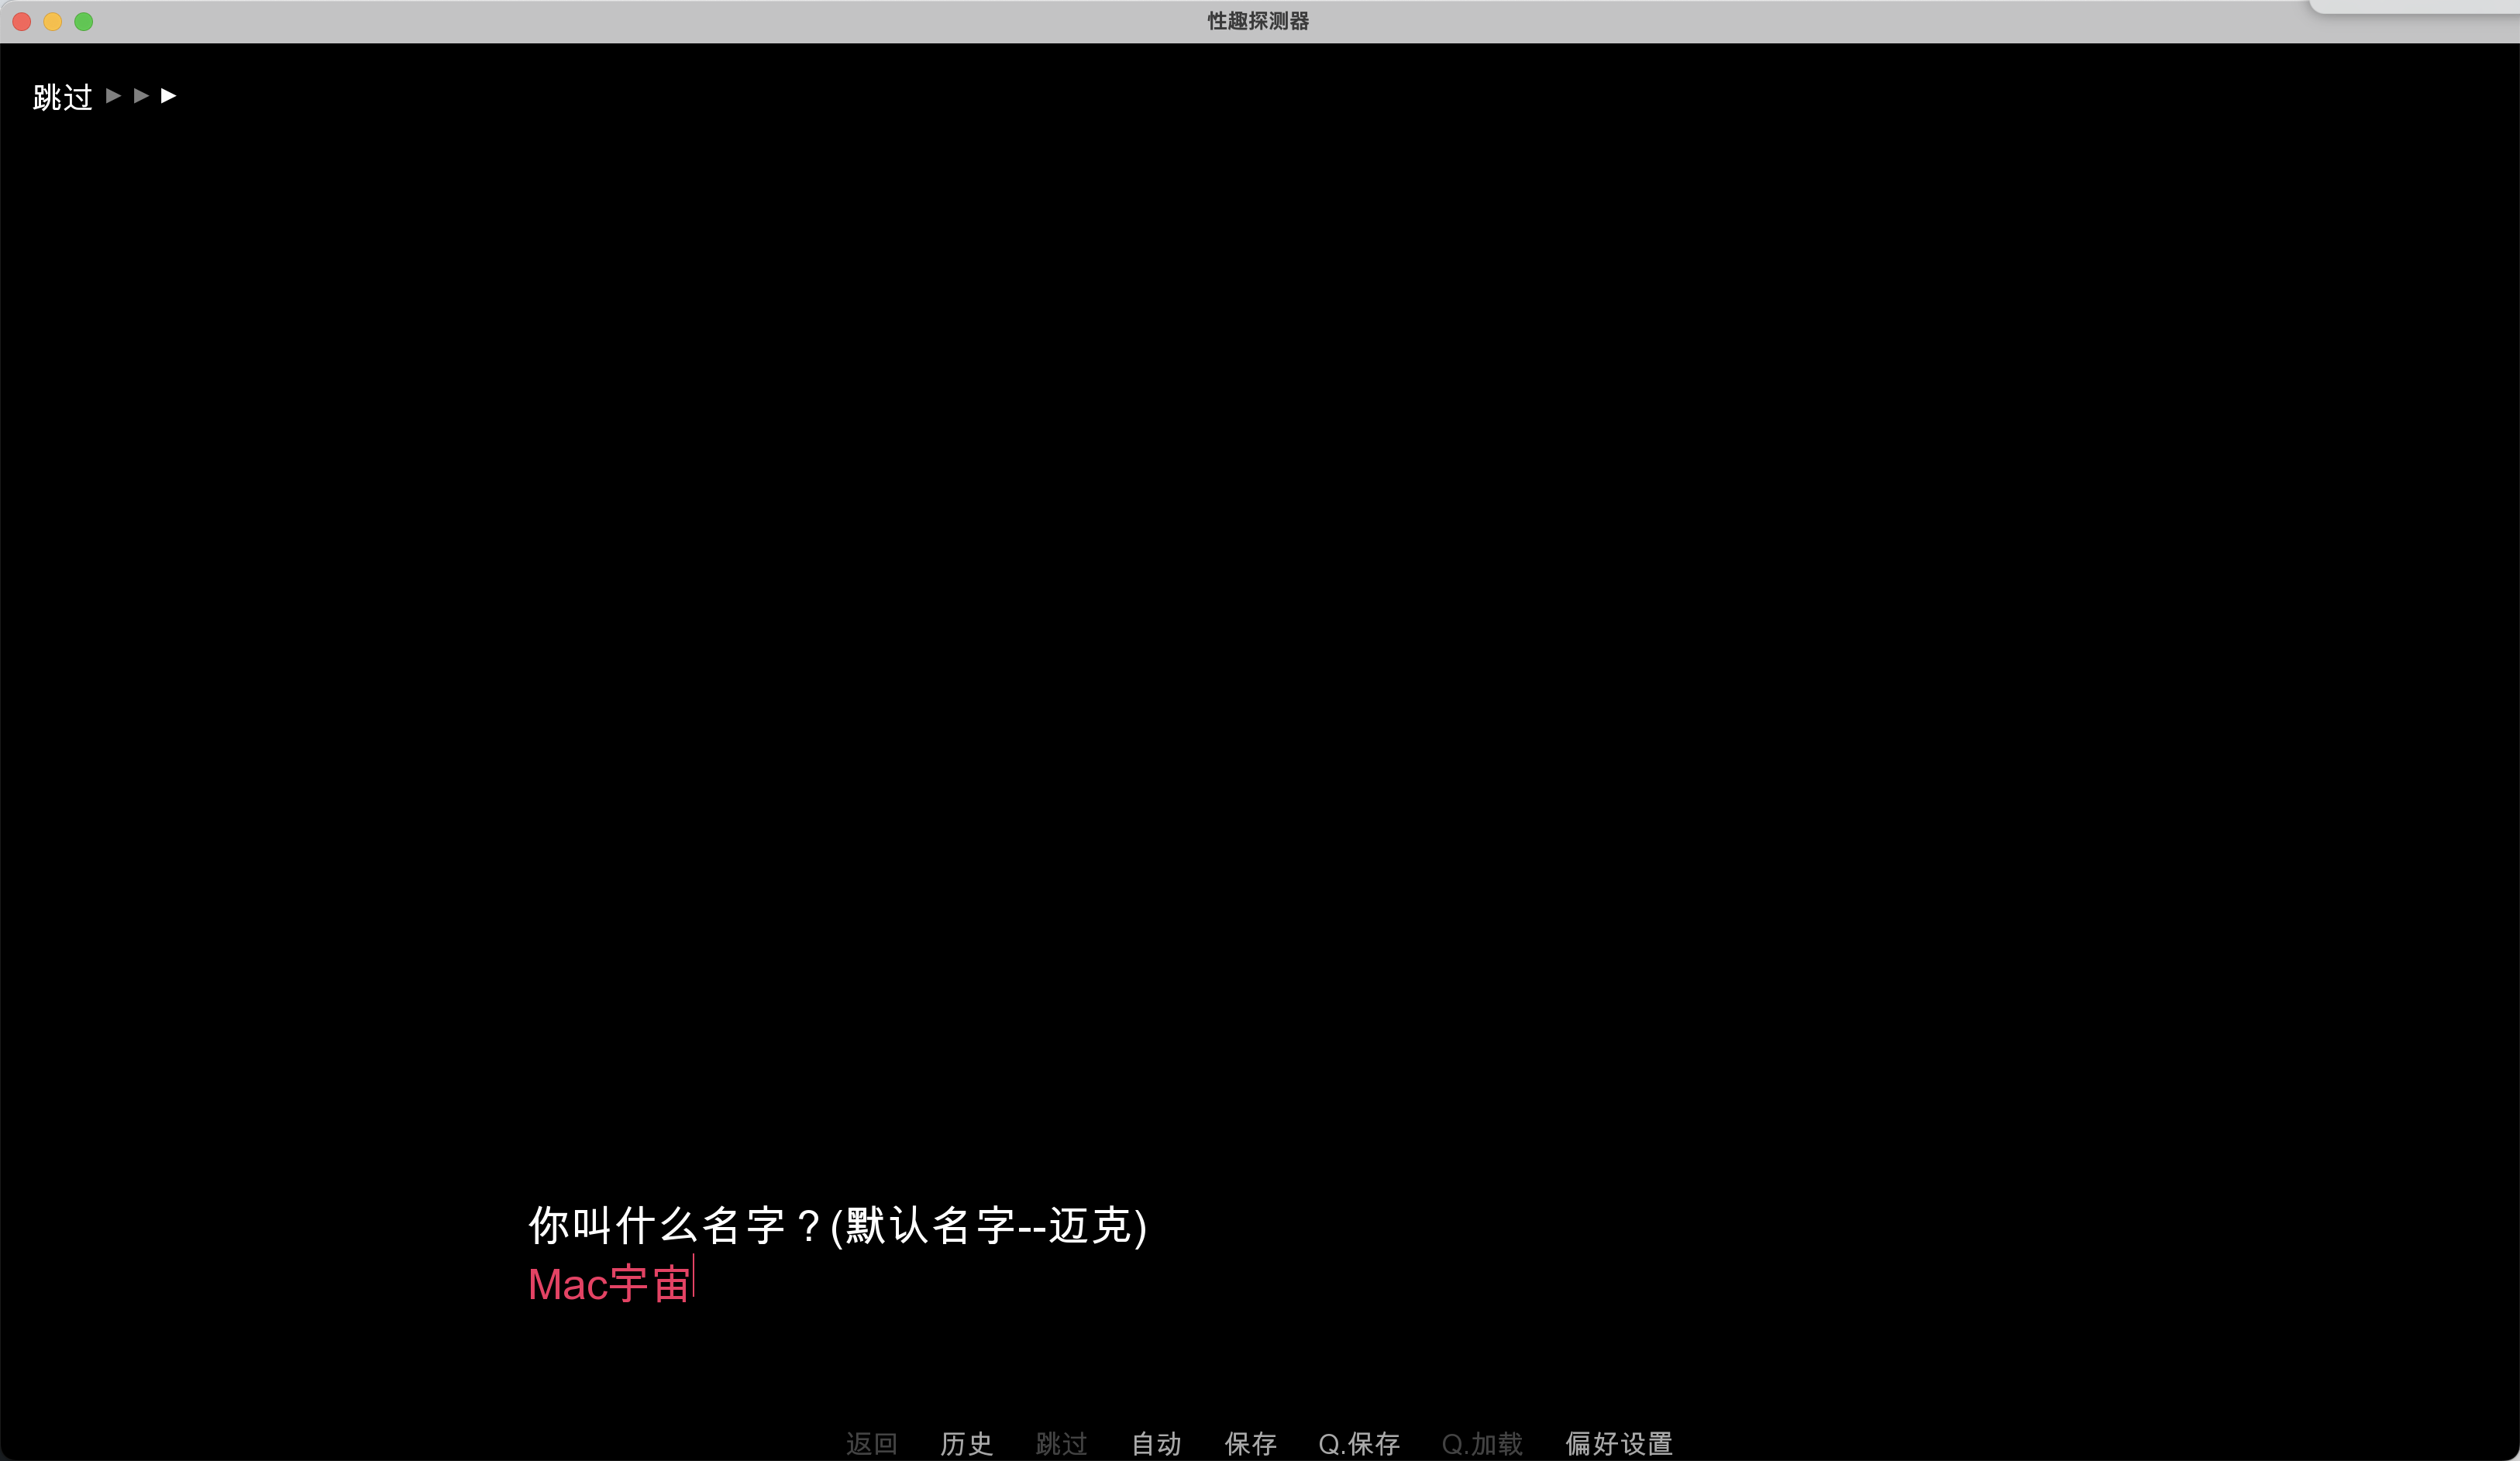 兴趣探测器 for Mac Fetish Locator v2.0.36 中文原生版 苹果电脑